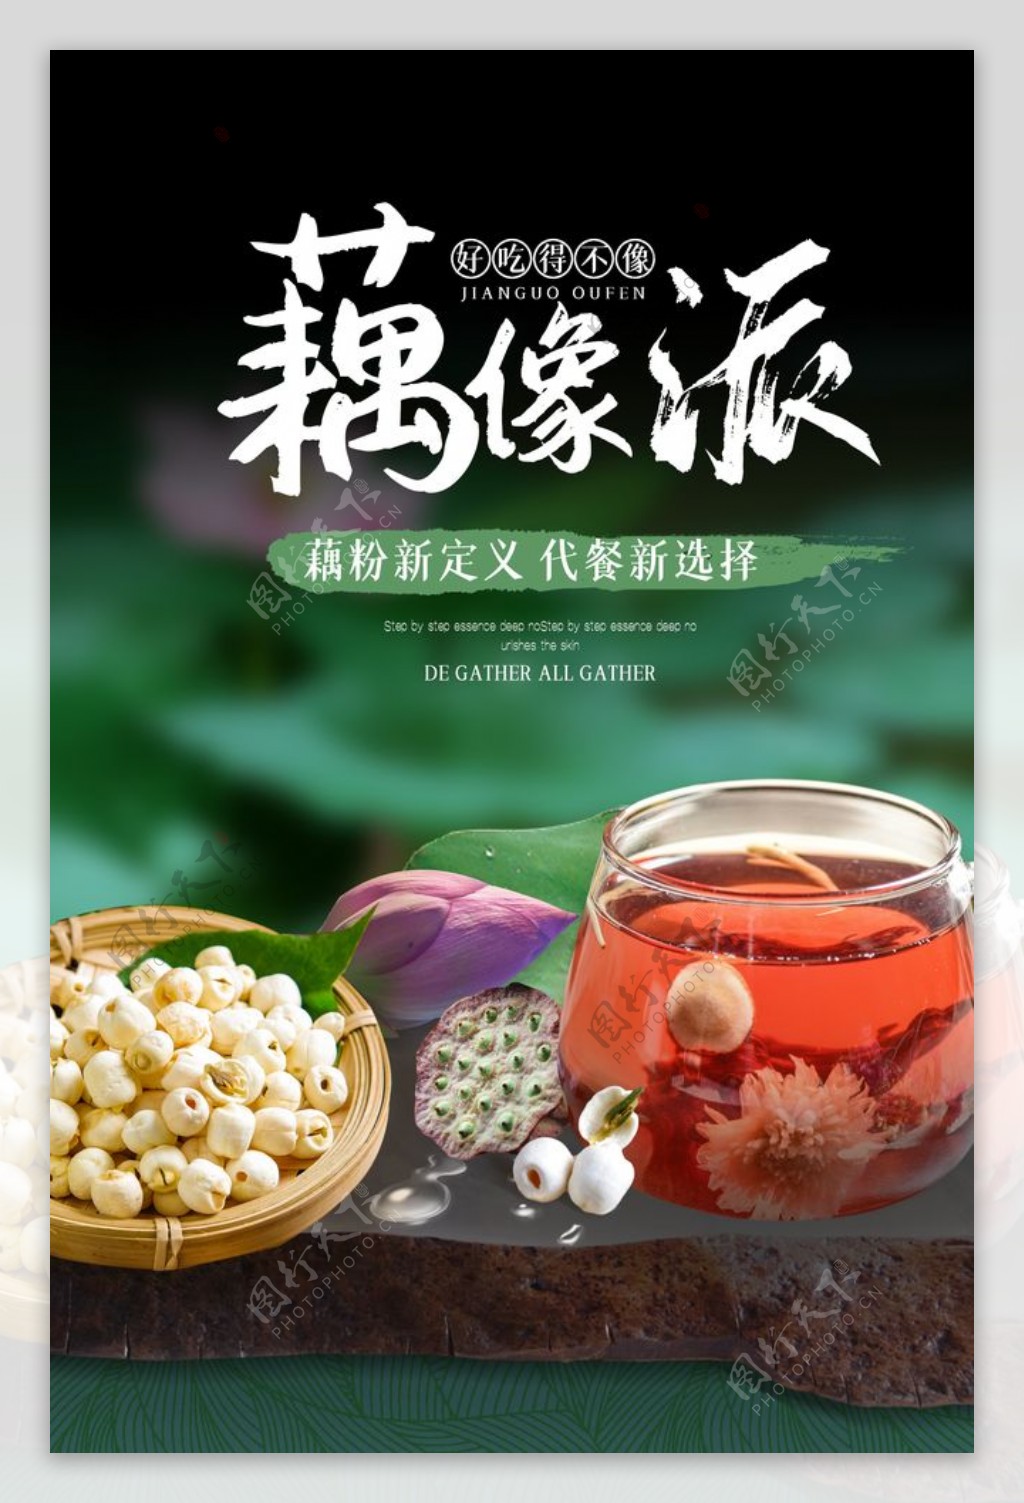 藕粉饮品夏季活动促销宣传海报